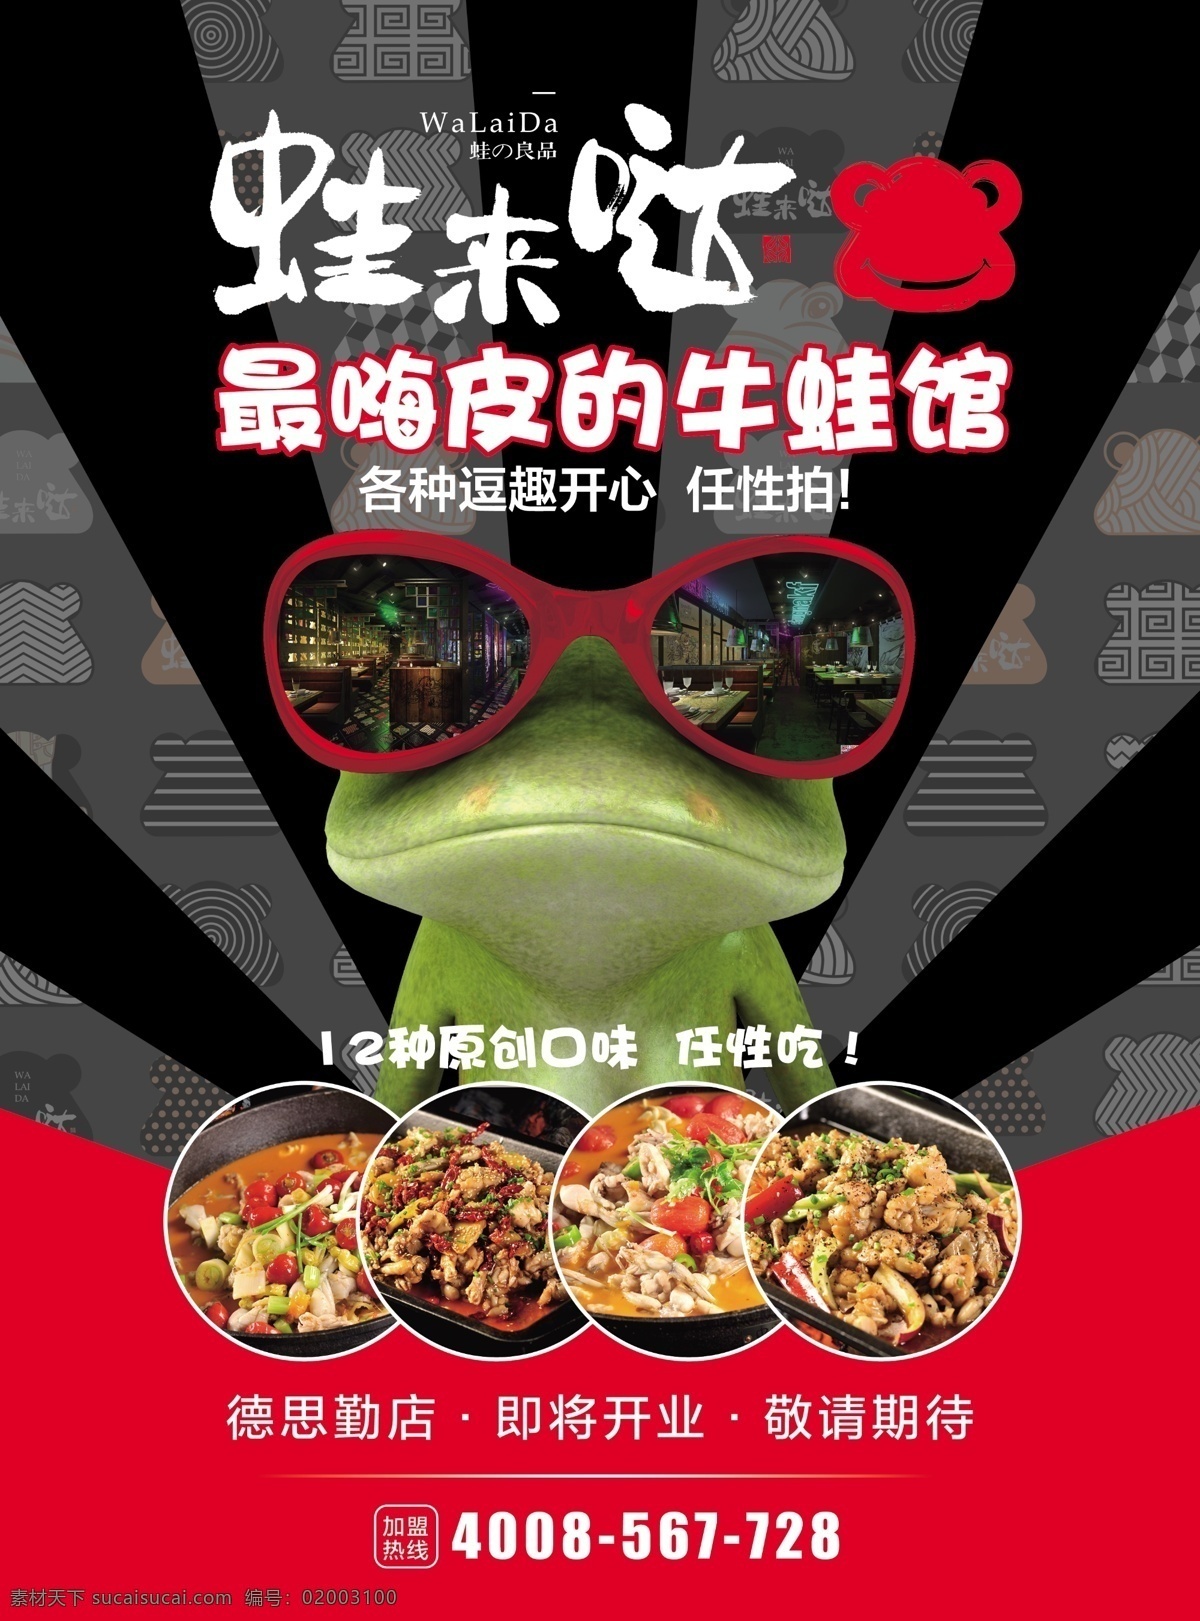 干 锅 牛蛙 海报 宣传单 牛蛙馆 美食 干锅牛蛙 淘宝